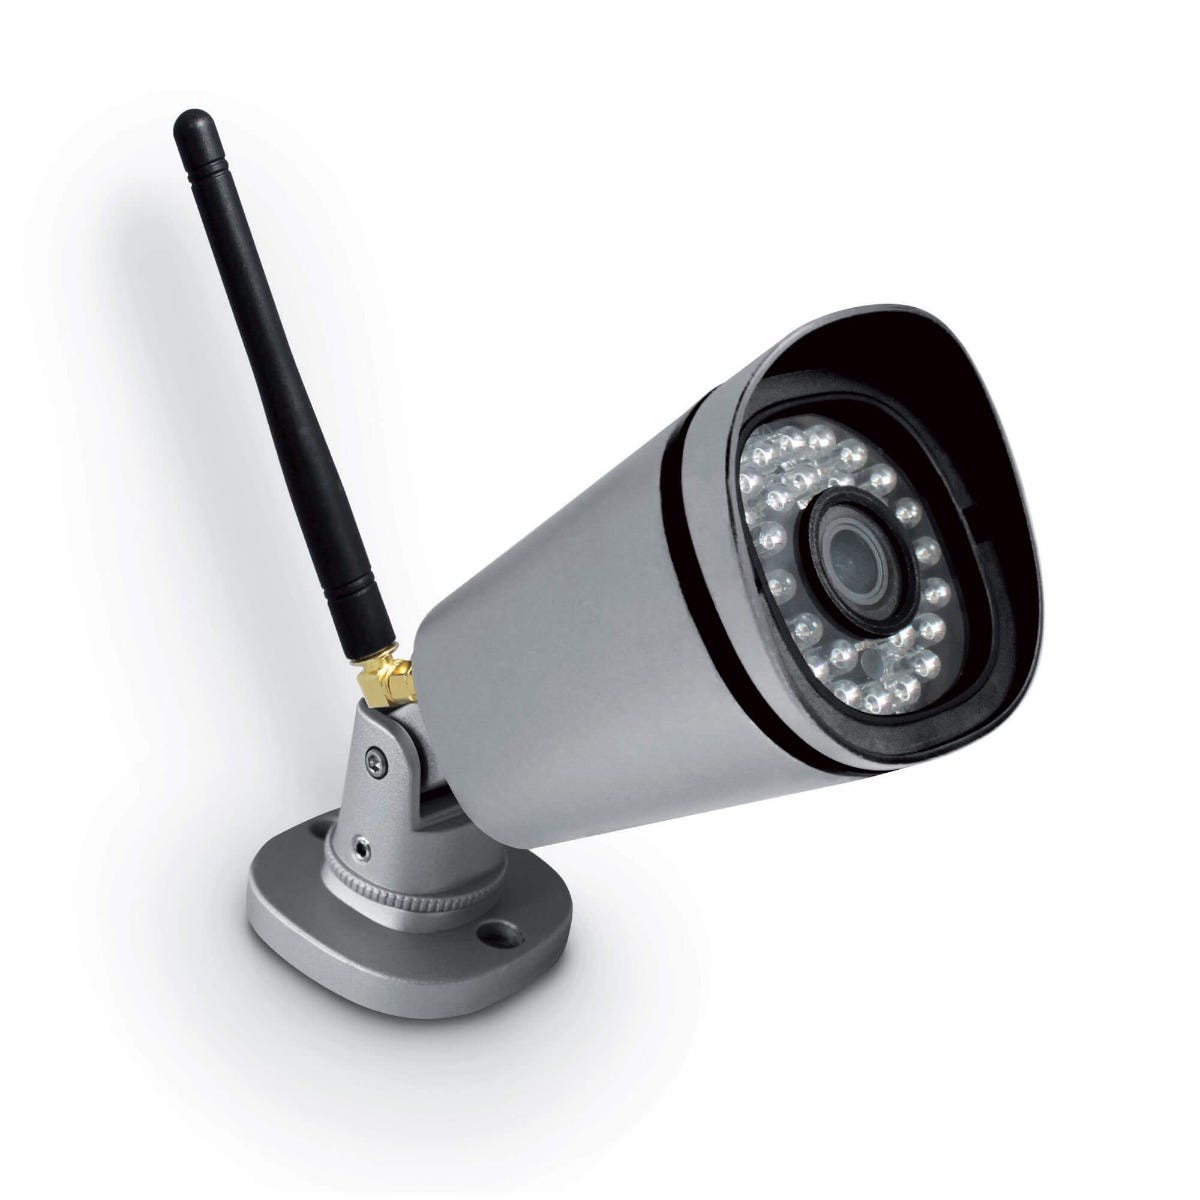 Caméra Turret Extérieur Wifi Ipc-t26ep-0280b-imou - Alarme - Video  surveillance BUT